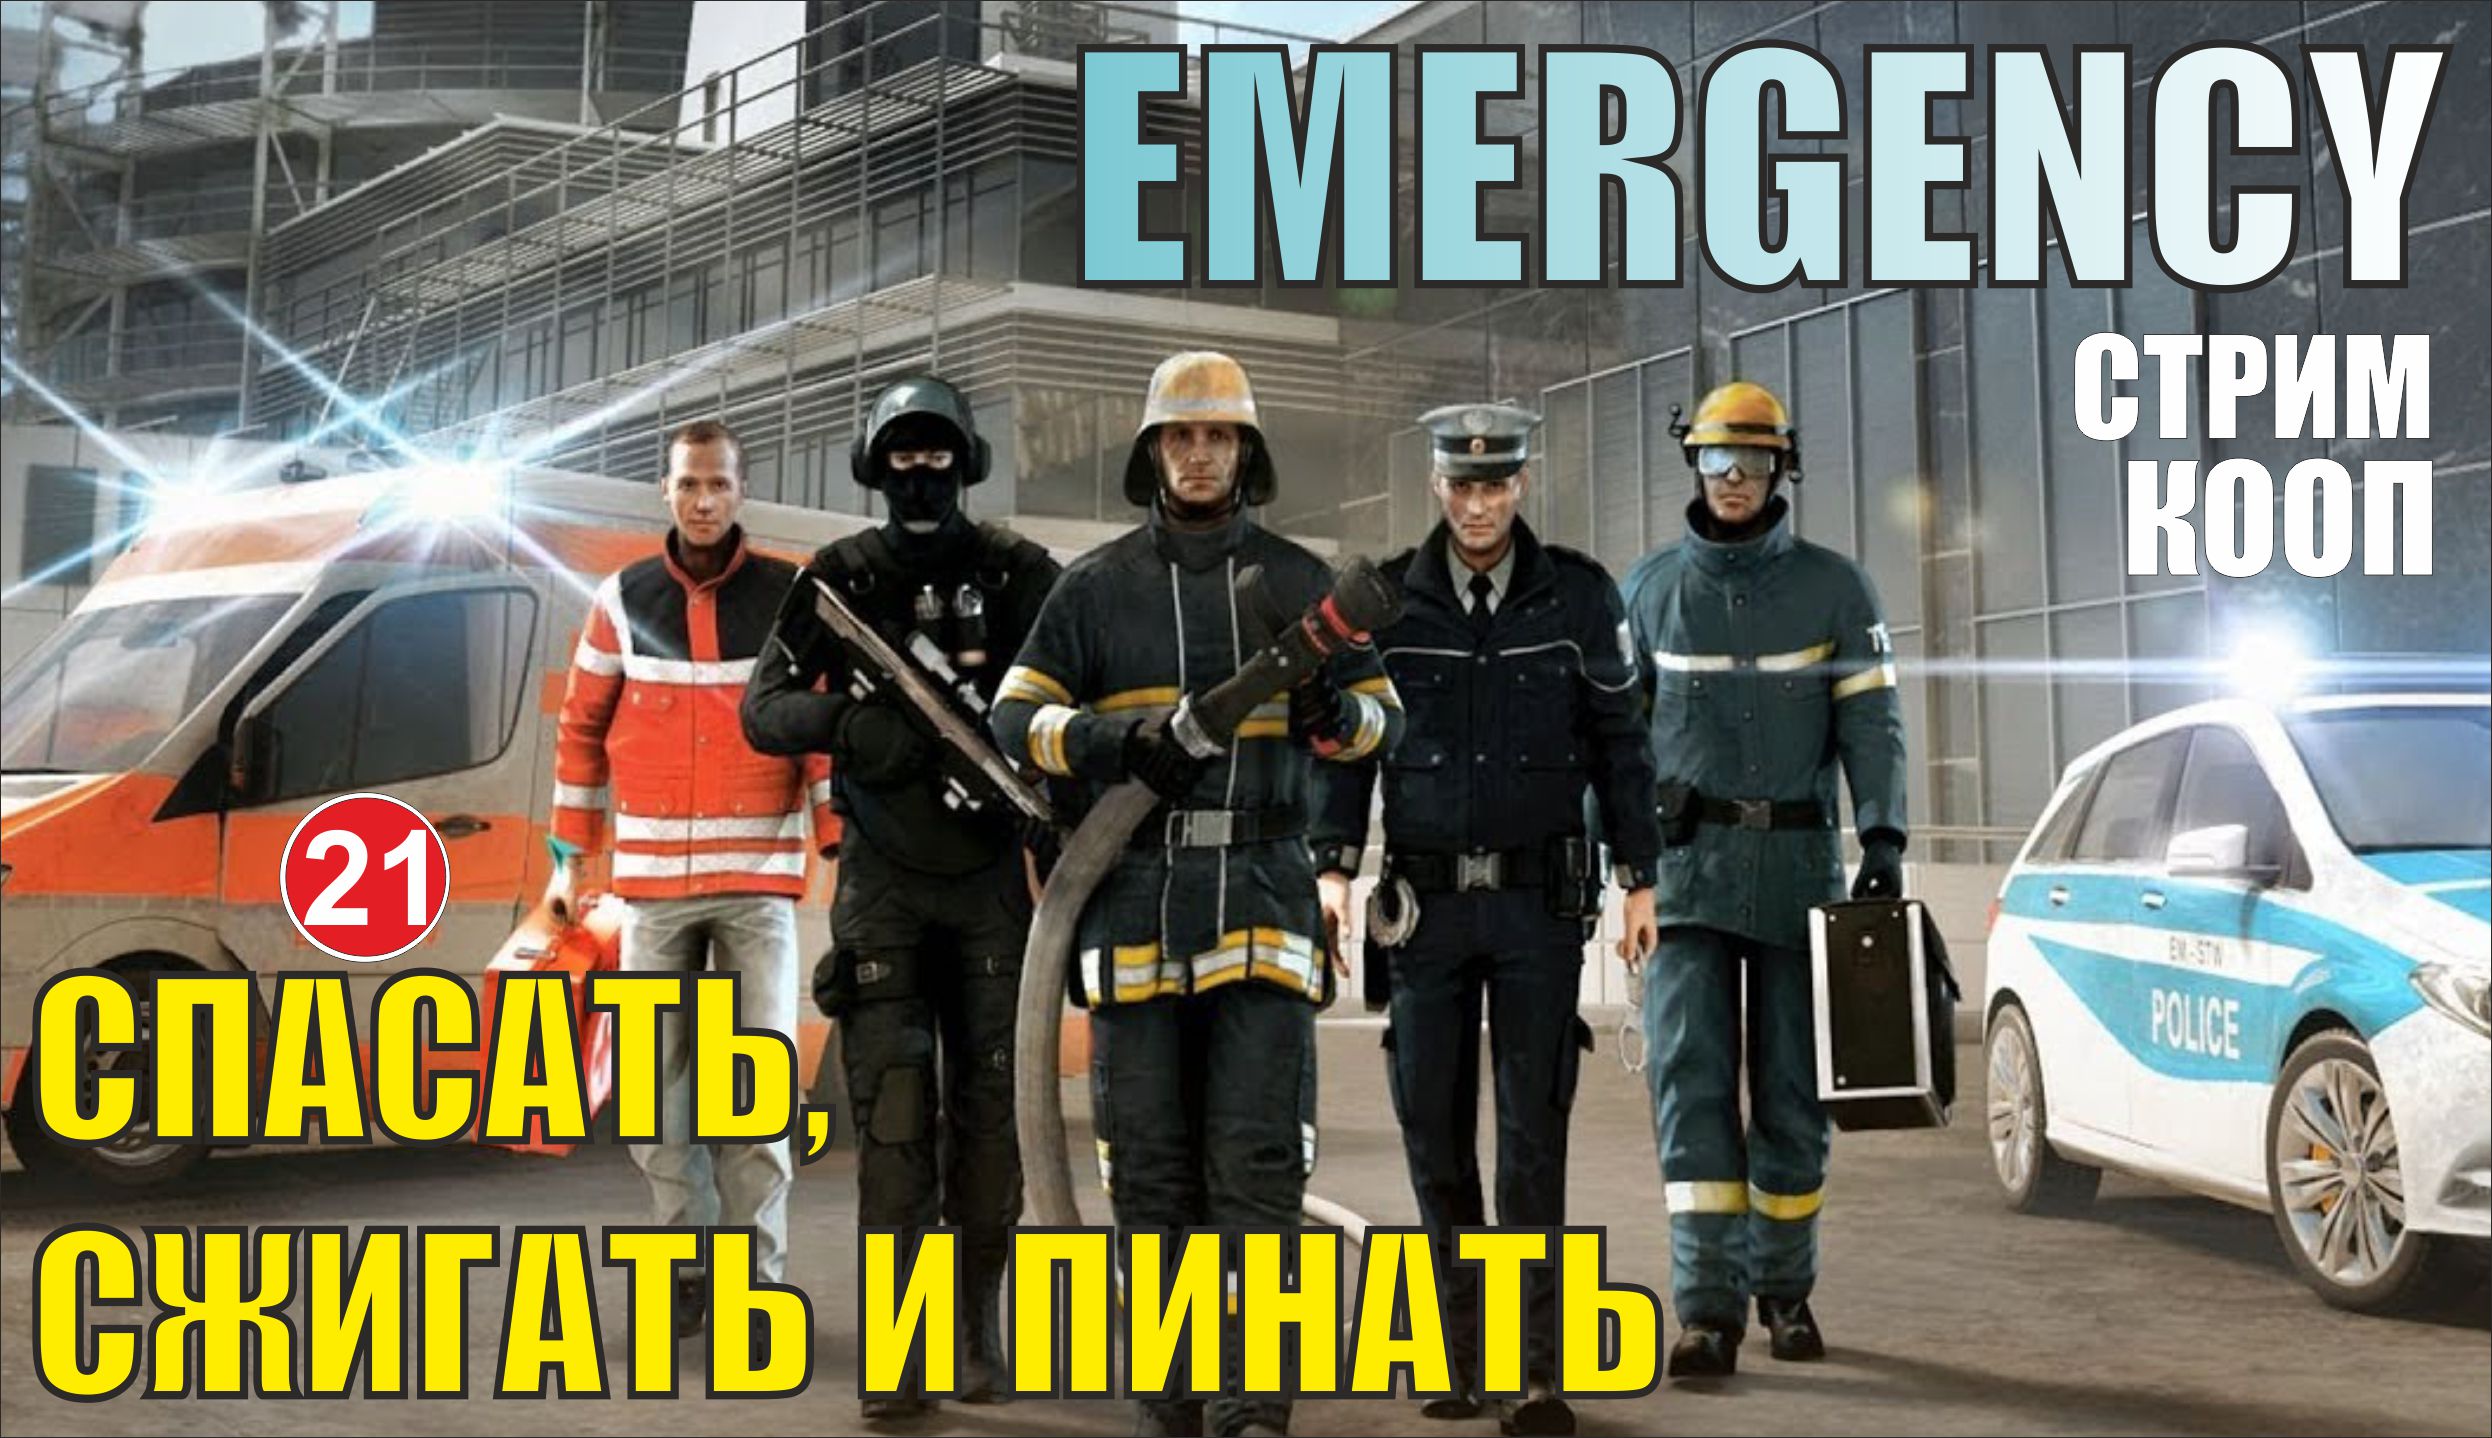 Emergency - Спасать, сжигать и пинать